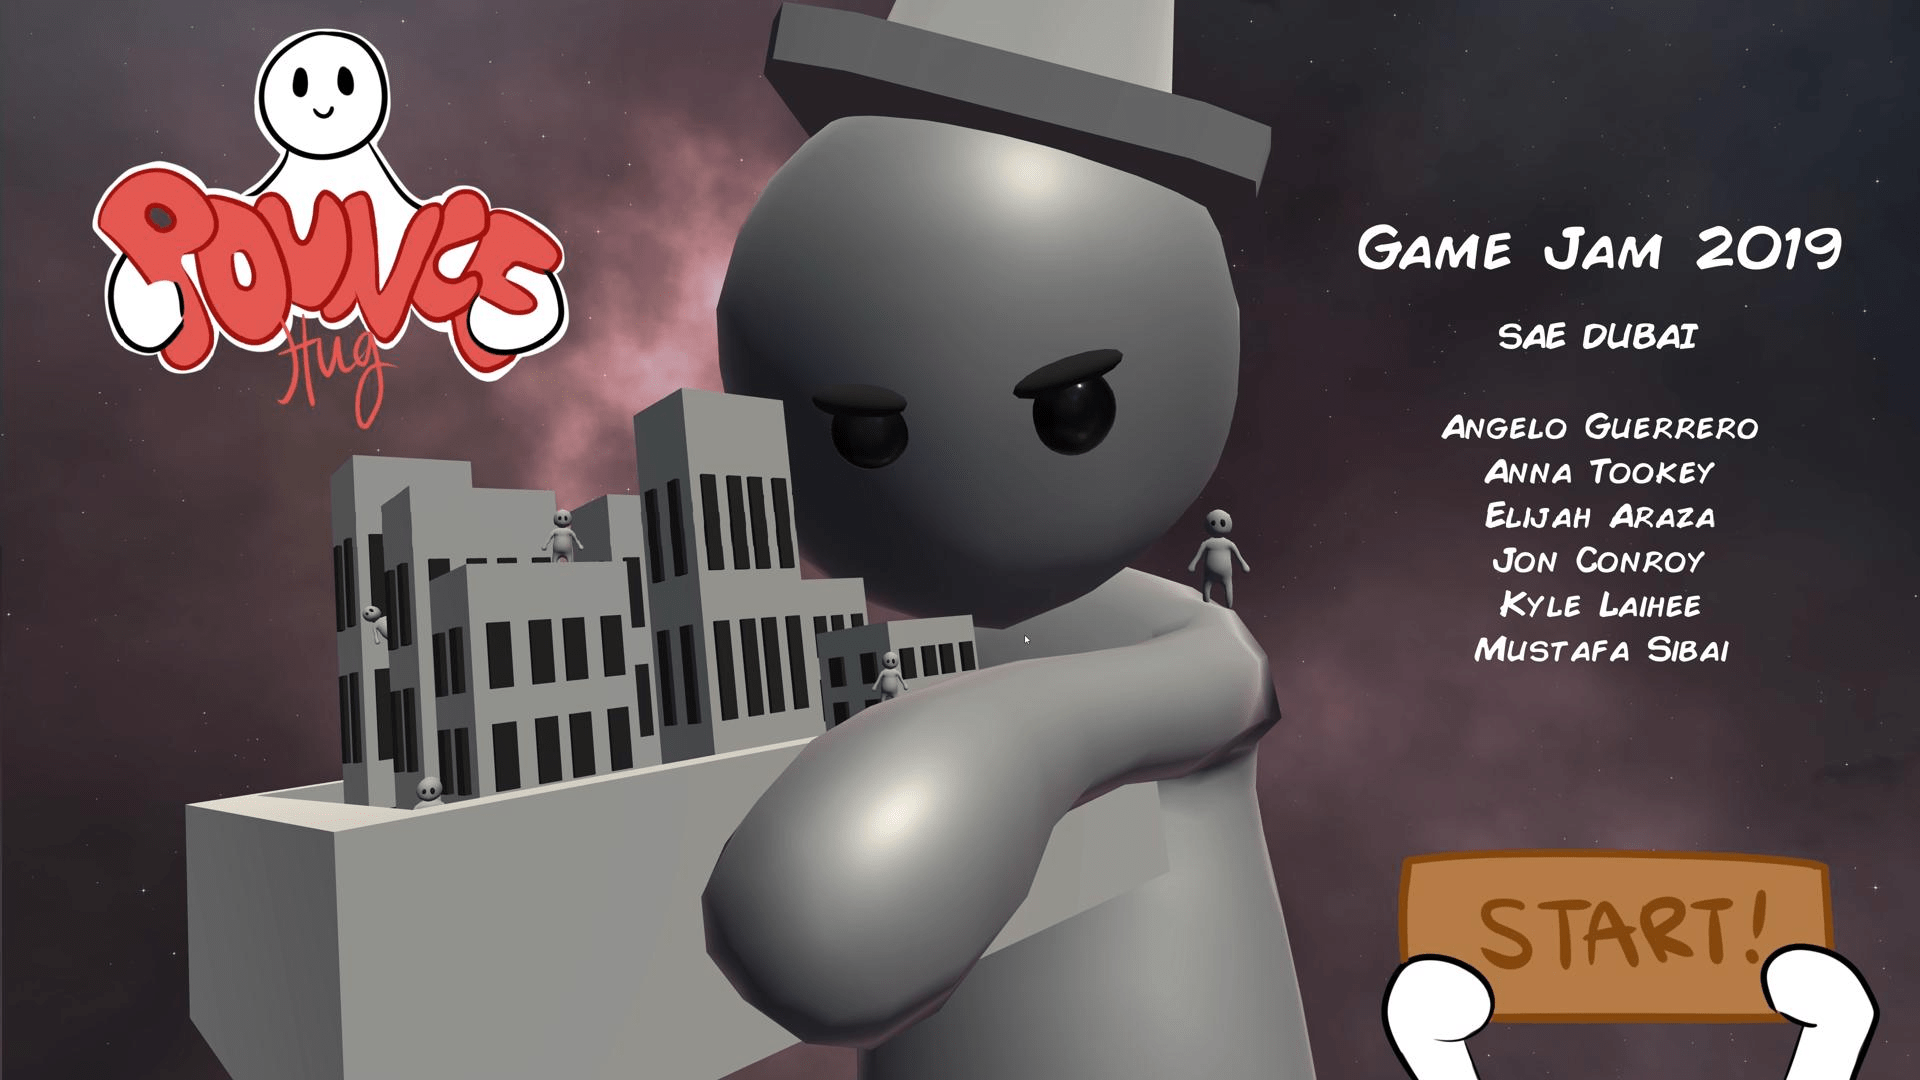 Global Game Jam 2019 - Pounce Hug